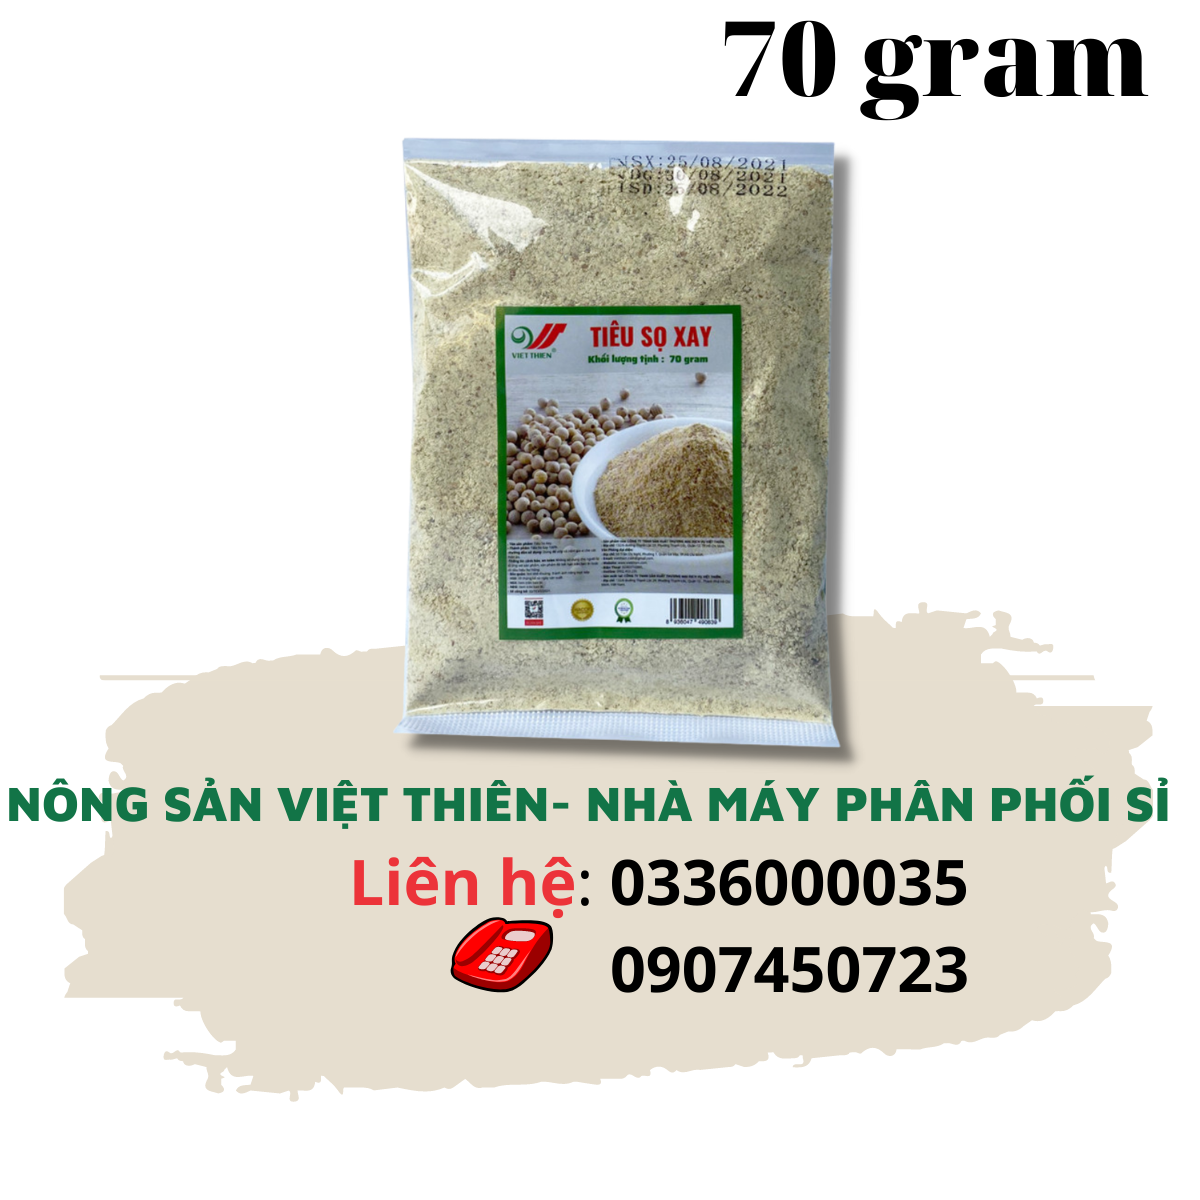 Tiêu sọ xay Việt Thiên 70g, nhà máy sản xuất và phân phối nông sản Việt Thiên, giá rẻ